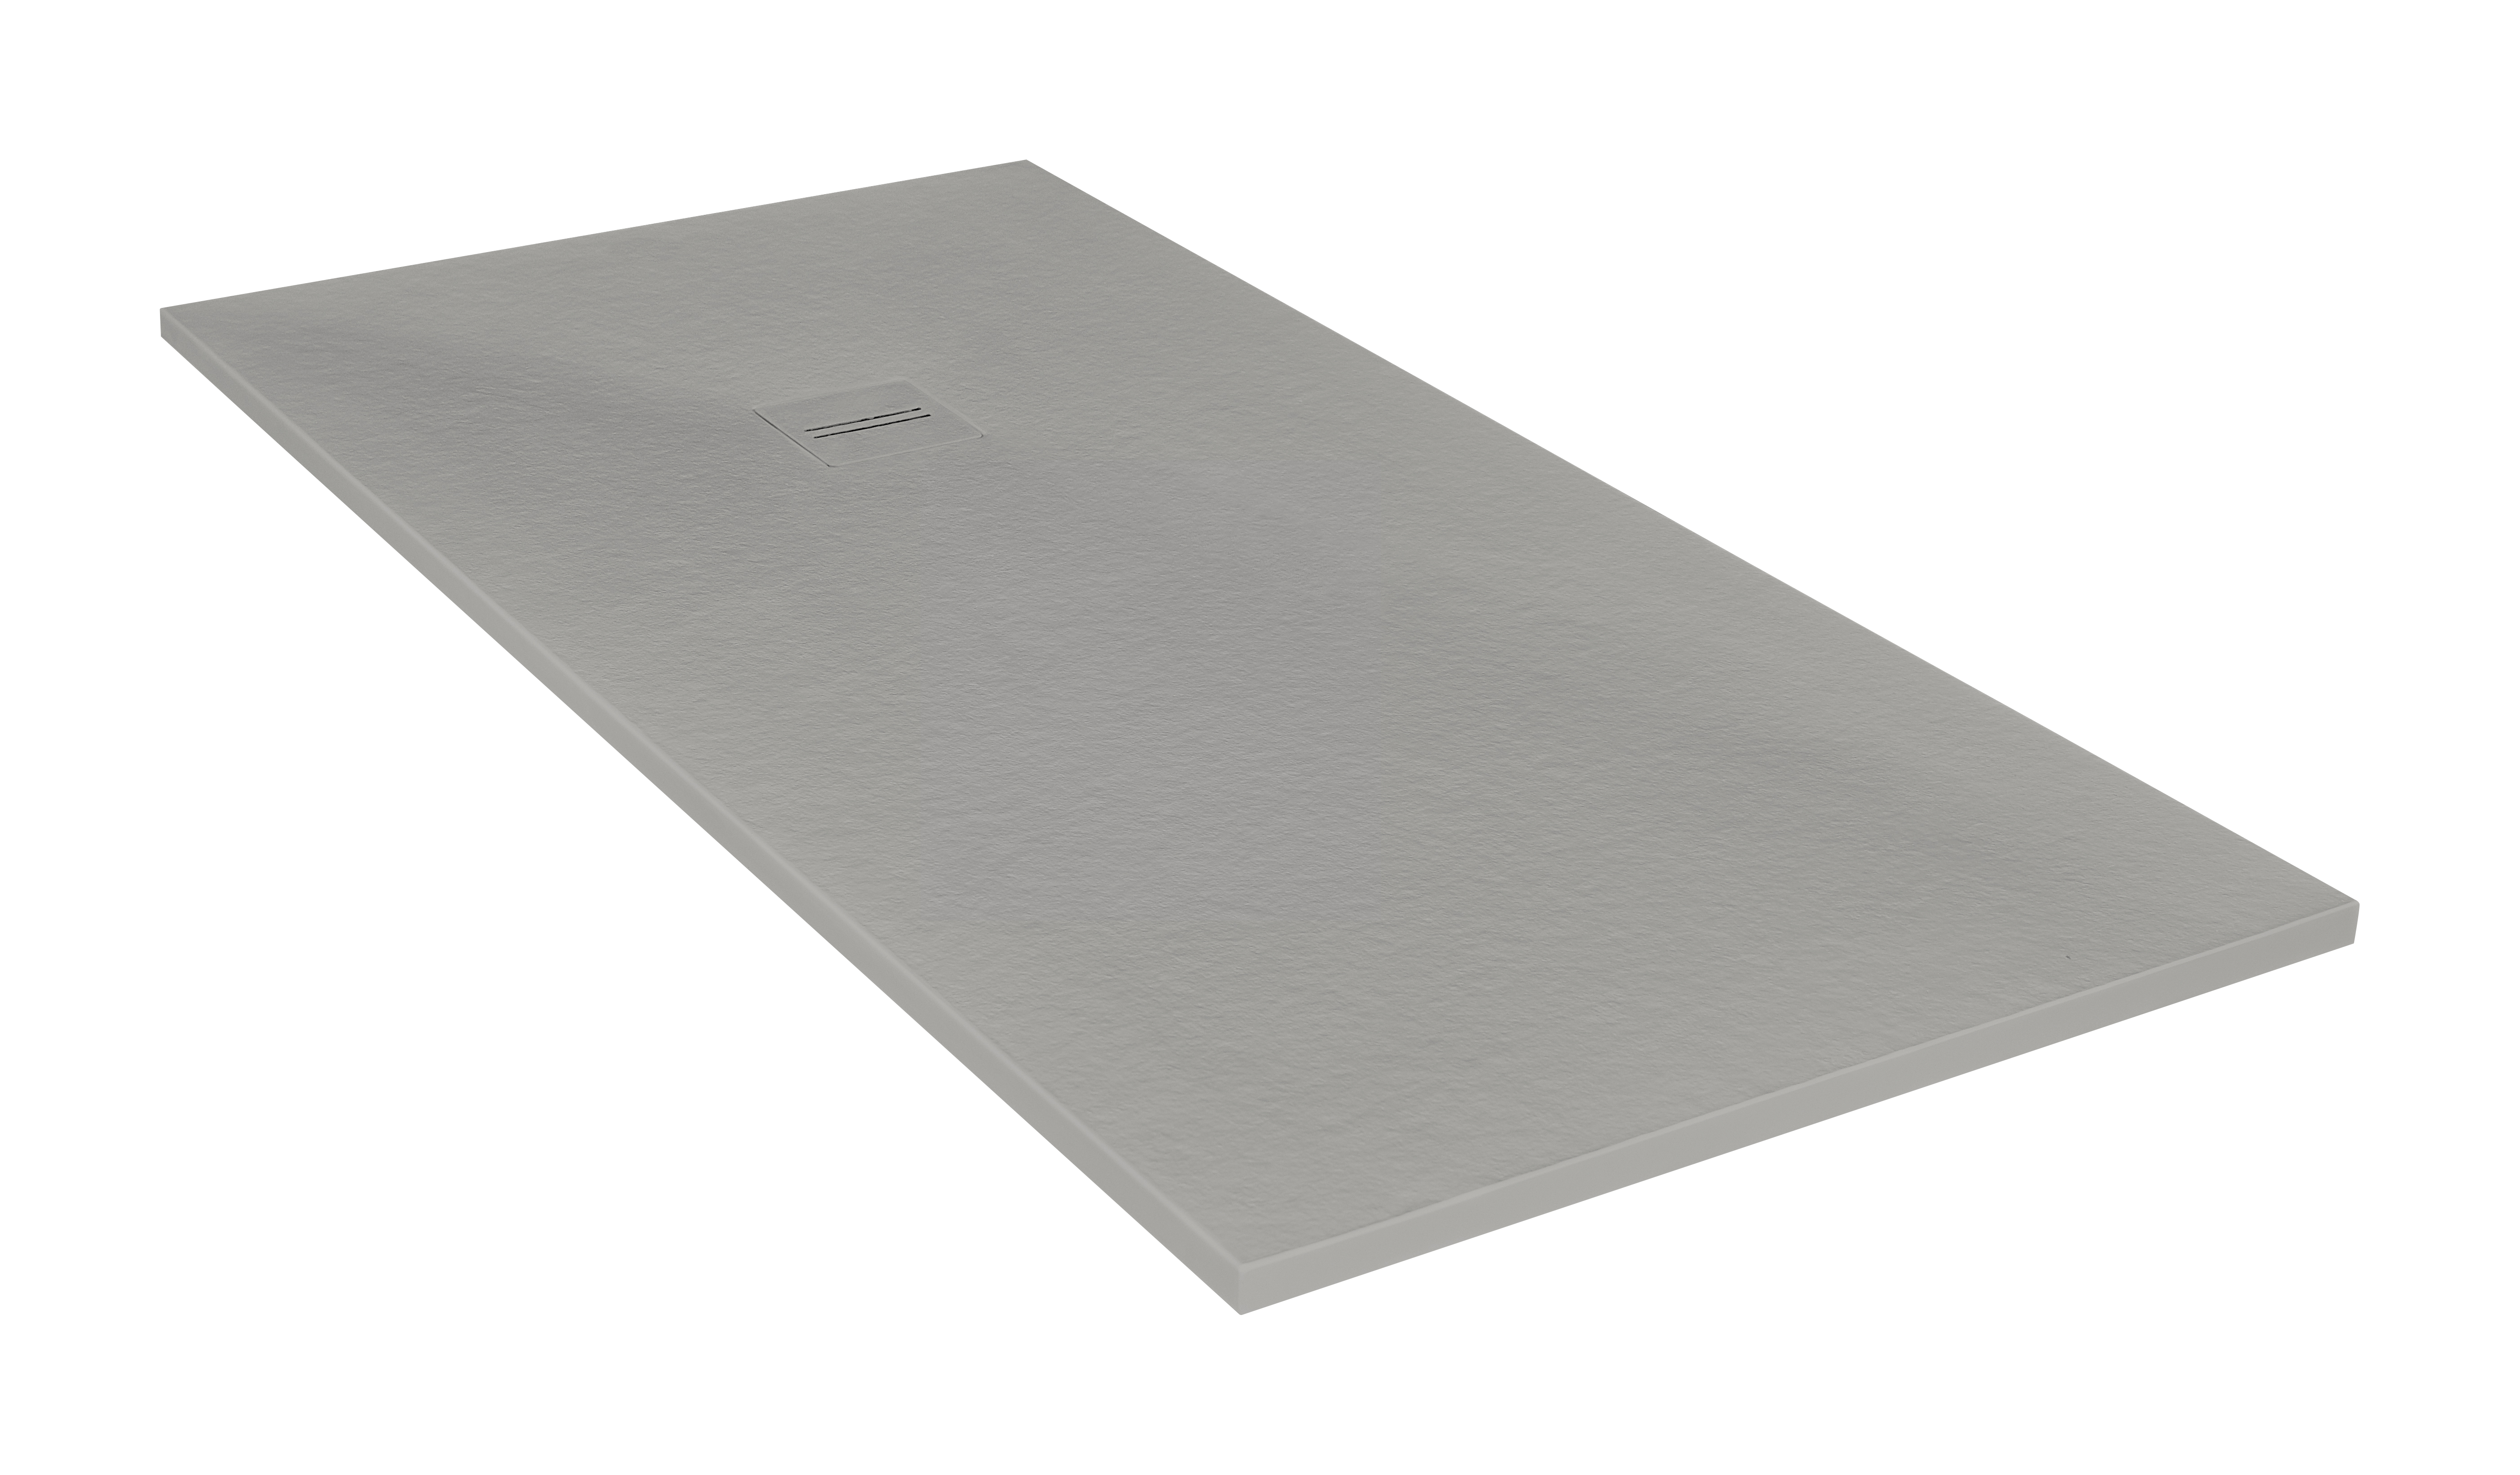 Plato de ducha cosmos 160x75 cm gris